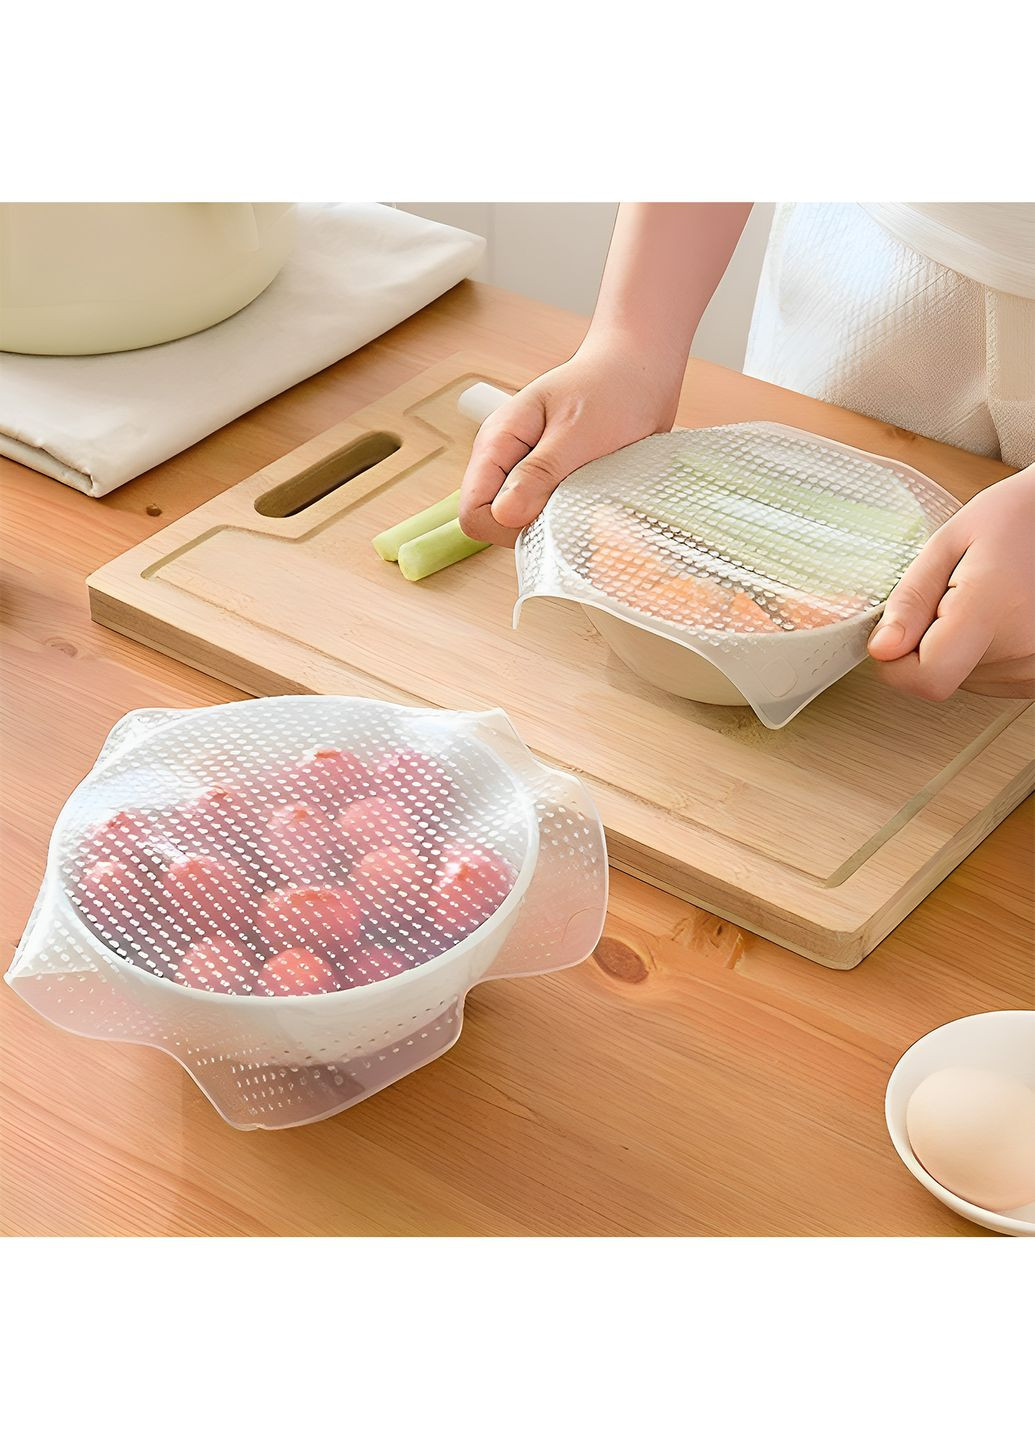 Набор силиконовых многоразовых крышек-пленок для хранения продуктов в холодильнике чехол на тарелку (4 шт.) Kitchen Master (263352442)